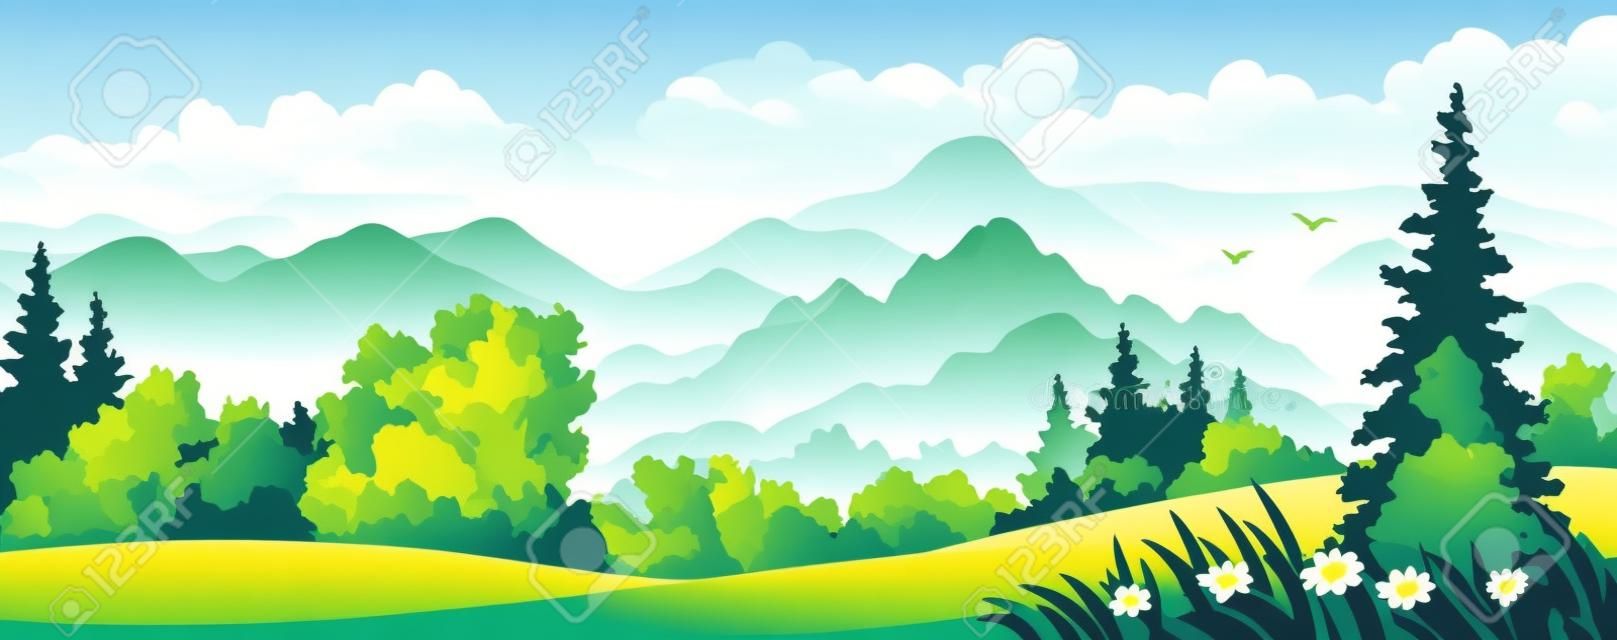 一個美麗的森林在山上矢量插圖